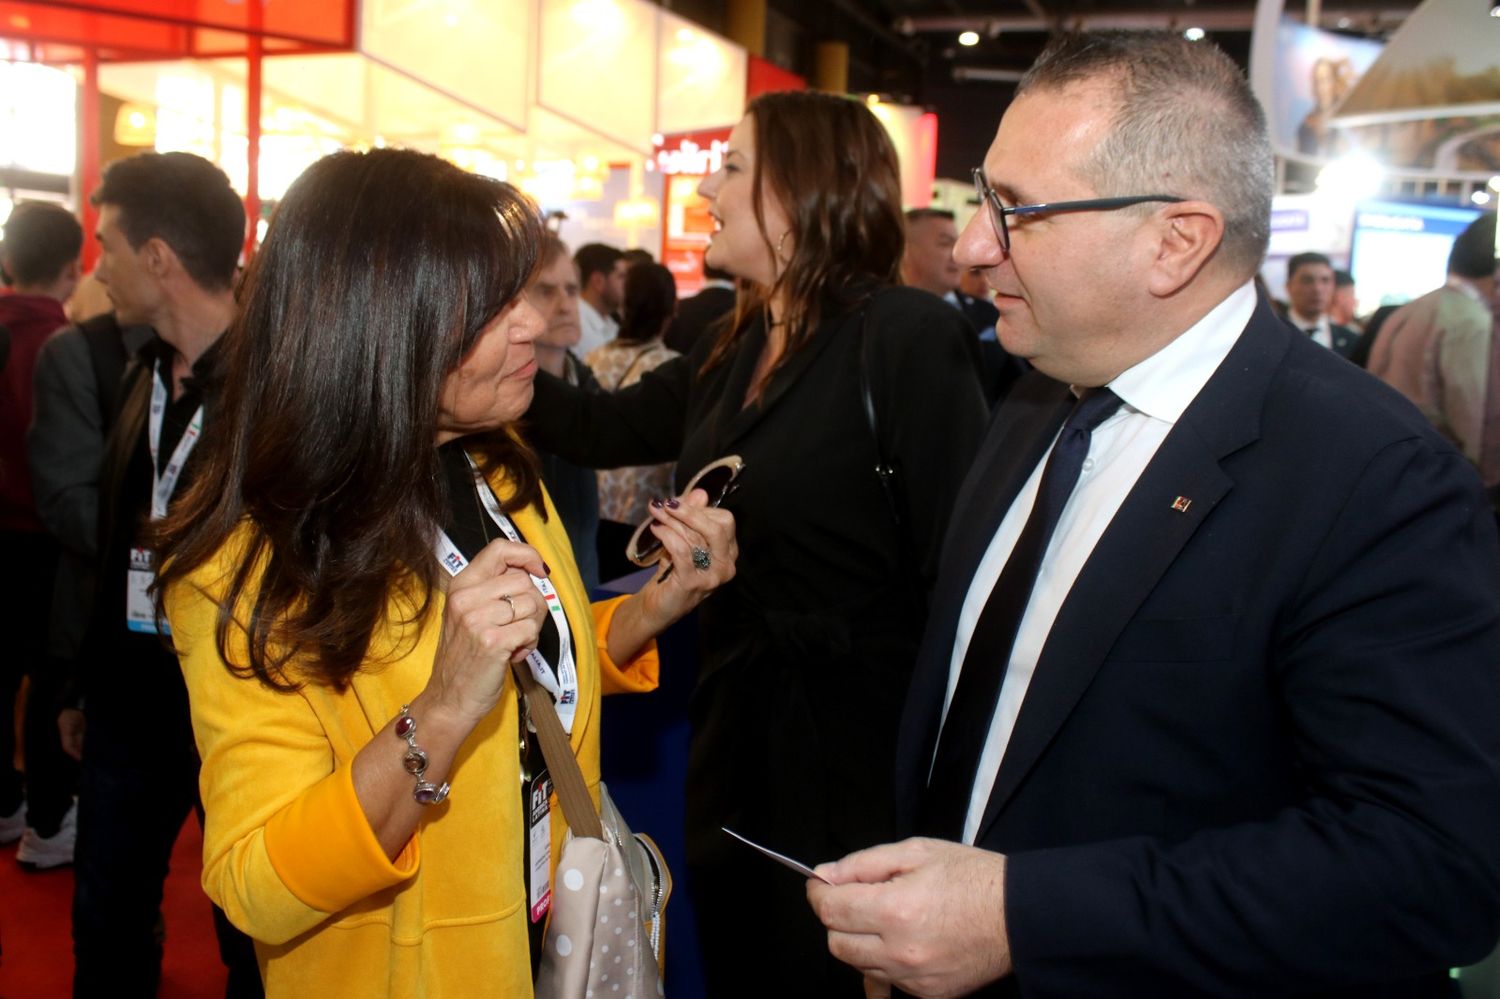 Biasone en el stand de Italia en la Feria Internacional de Turismo 2023, junto al diputado Gianluca Caramanna, consejero de la ministra de Turismo de Italia.